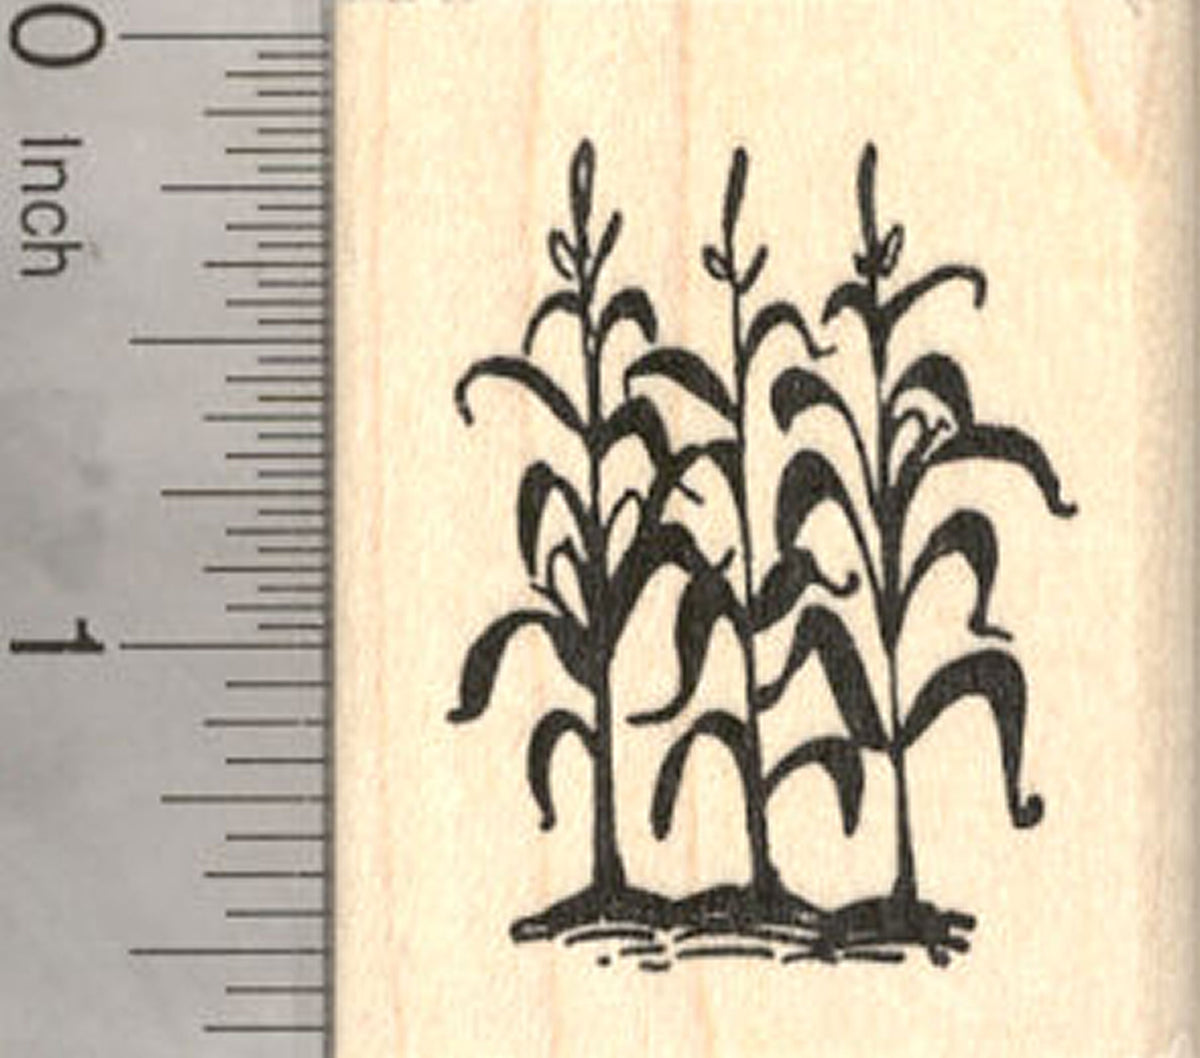 corn plant silhouette